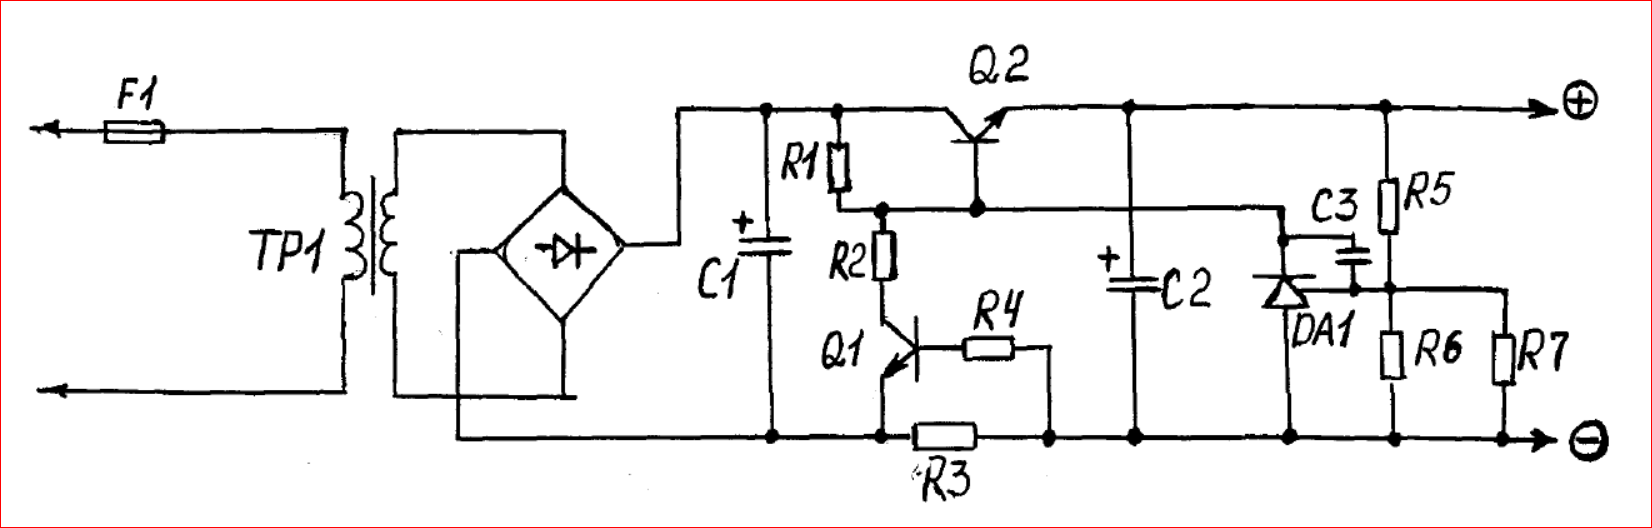 Регулятор напряжения выпрямителя. Транзисторный стабилизированный выпрямитель ТСТ-12-5 схема. Схема автомобильного зарядного устройства на полевом транзисторе. Автомобильное зарядное на полевом транзисторе схема. Схема выпрямителя с регулировкой напряжения на одном транзисторе.